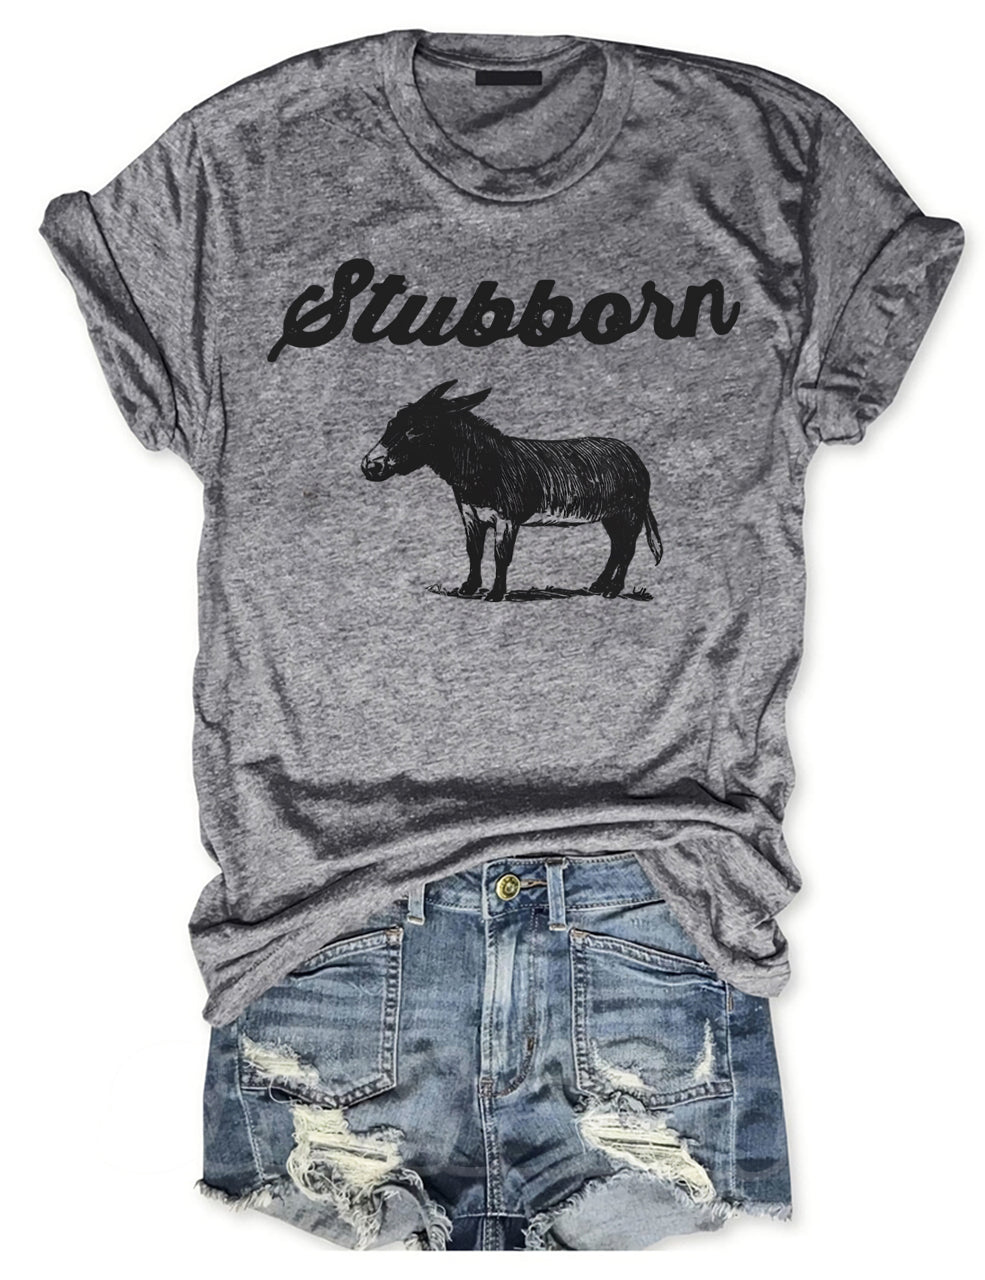 Stubbosn Donkey T-shirt